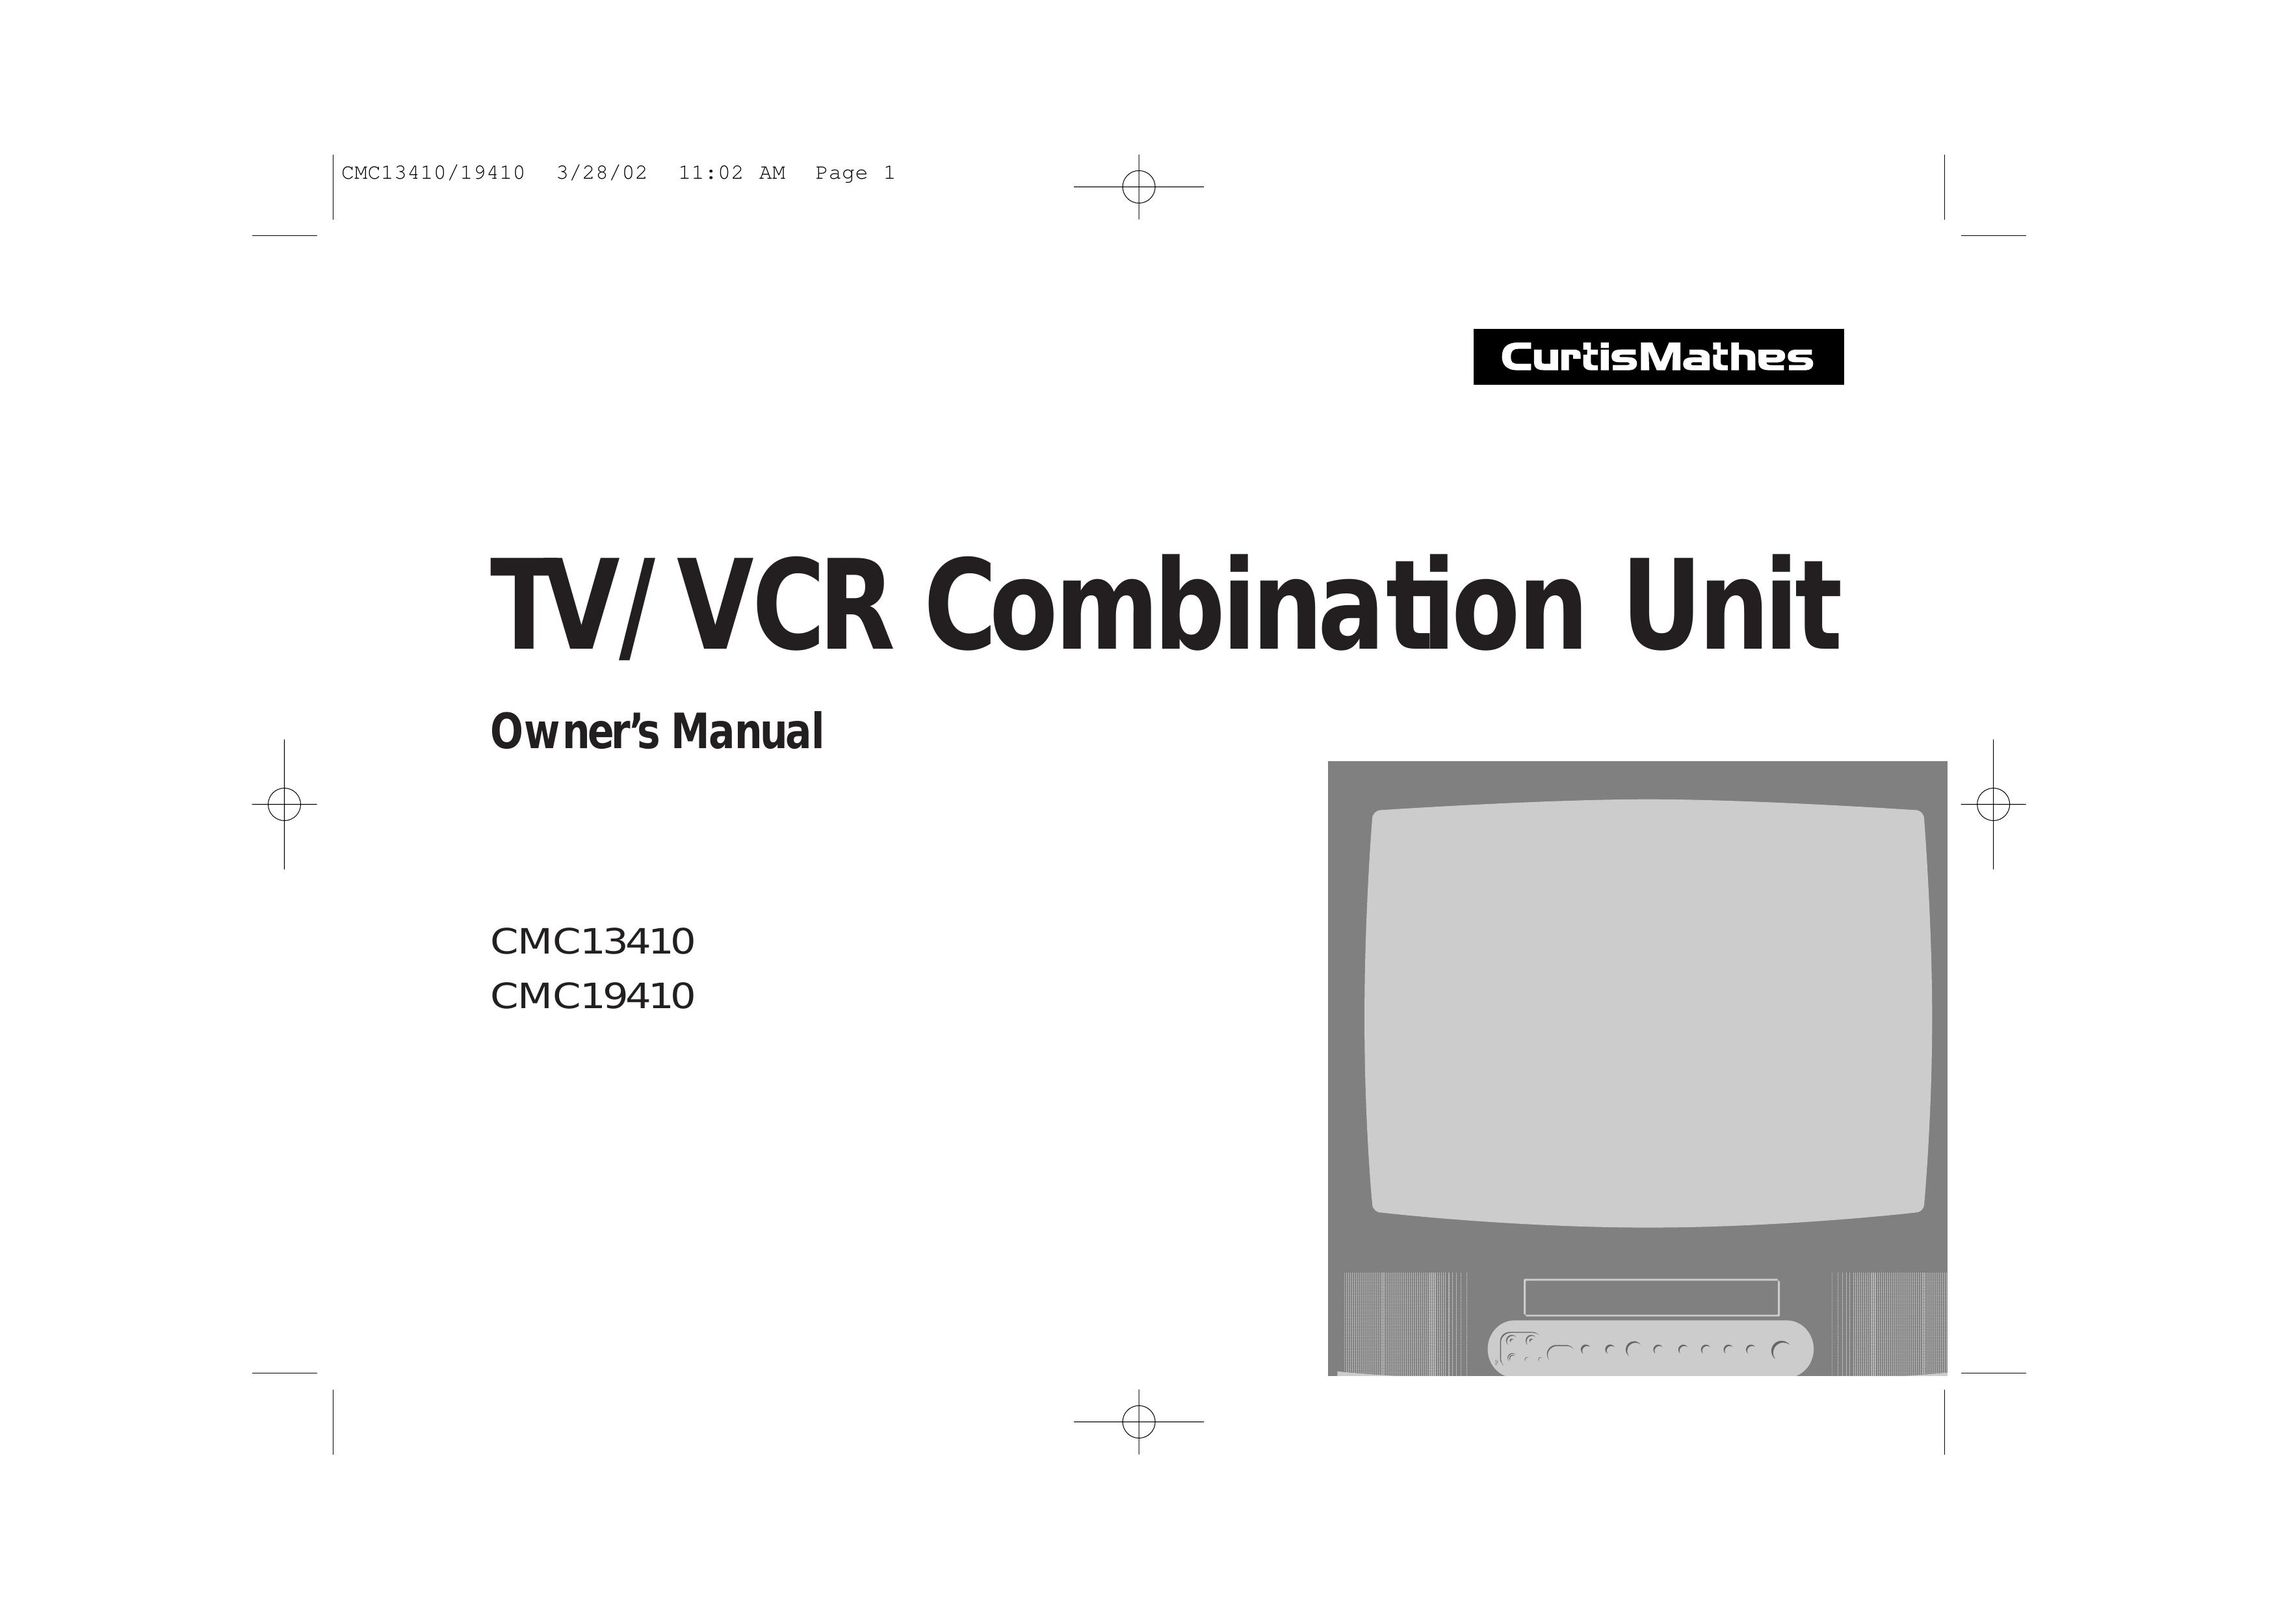 Curtis Mathes CMC19410 TV VCR Combo User Manual